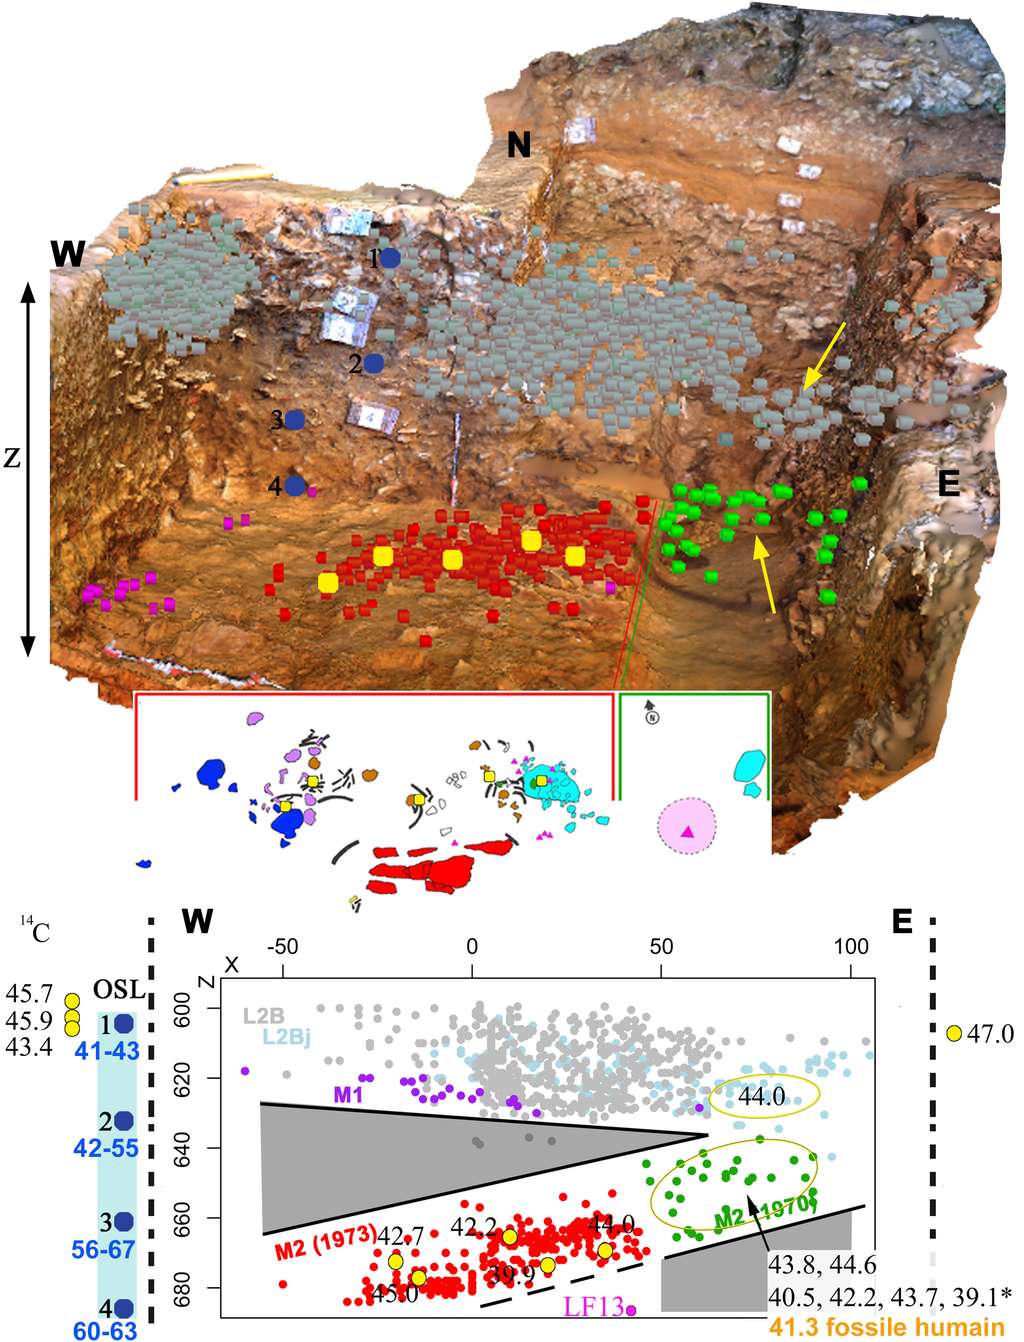 La Ferrassie en huit dates. Vue du dessus d’un modèle 3D de la zone fouillée en 2014 où a été découvert le Néandertalien La Ferrassie 8 (en haut). Plan en 2D des restes de l’enfant et des objets associés (au milieu). Projection dans la direction Est-Ouest de tous les objets découverts dans cette zone du site (en bas). Les restes archéologiques associés à l’enfant néandertalien (représentés par les points rouge et verts) sont bien séparés de la couche située au-dessus (point gris) et ne suivent pas l’orientation naturelle des autres couches archéologiques. Les âges obtenus par 14C (localisés par des points et flèches jaunes) montrent que le fossile humain directement daté est plus récent que les objets venant de la couche située au-dessus et que le sédiment, daté par la méthode OSL (points bleus et valeurs en bleu), qui l’entoure. © Antoine Balzeau, CNRS, MNHN